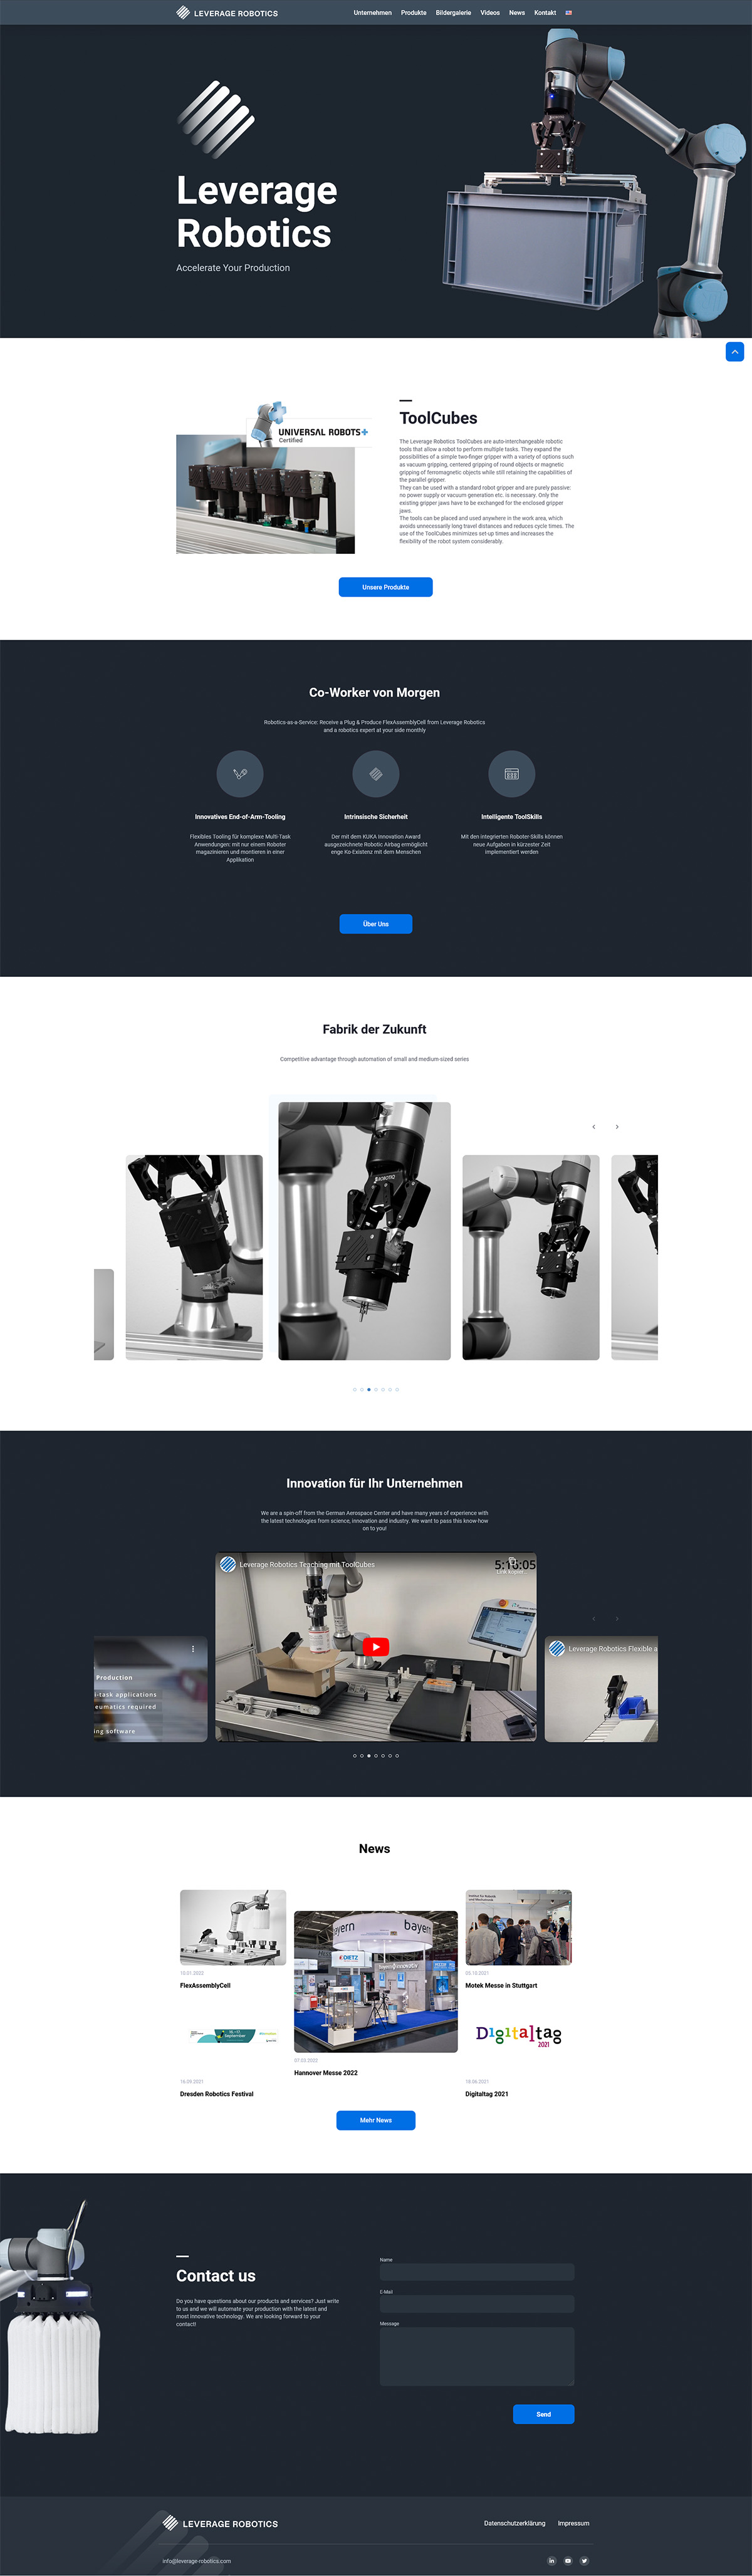 Das Bild zeigt die Webseite von Leverage Robotics als Desktopansicht.